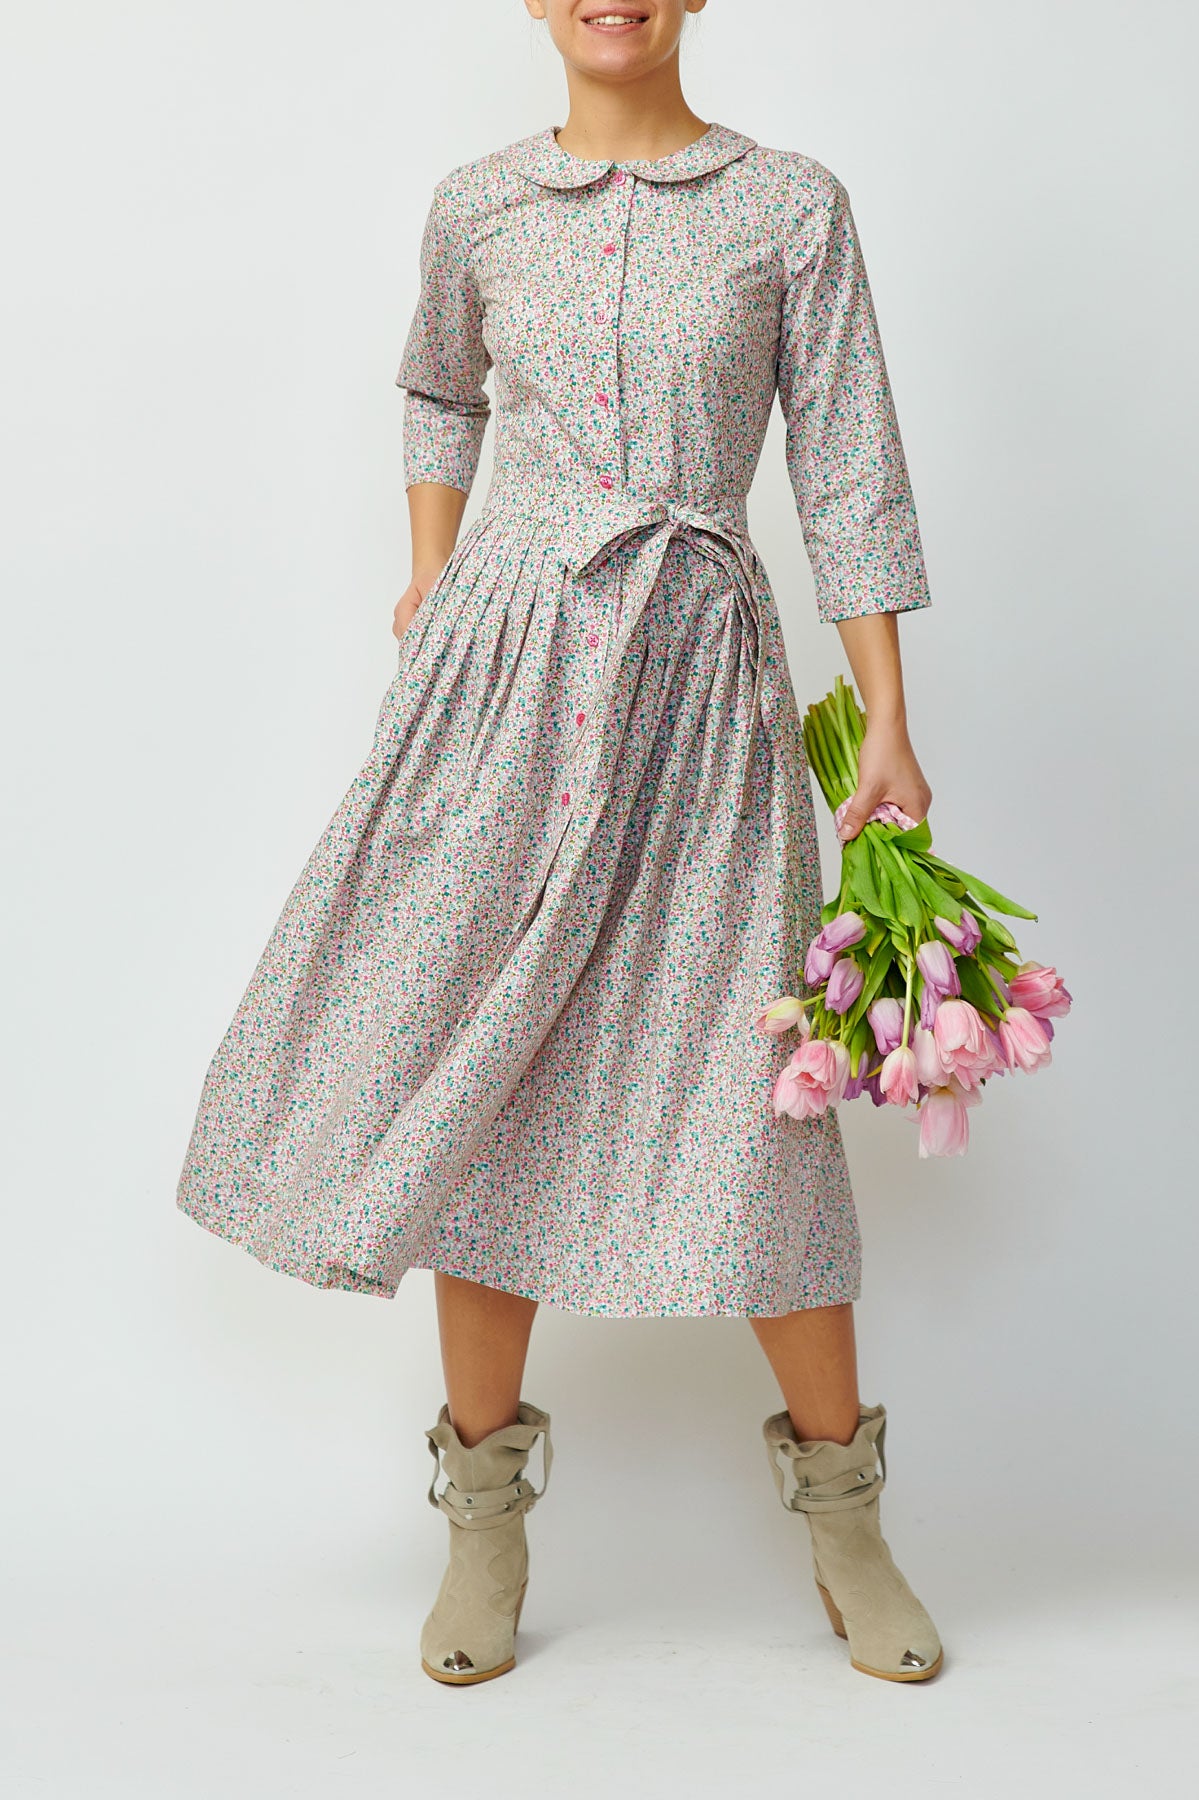 Rochie camasa cu flori mici, roz si verzi